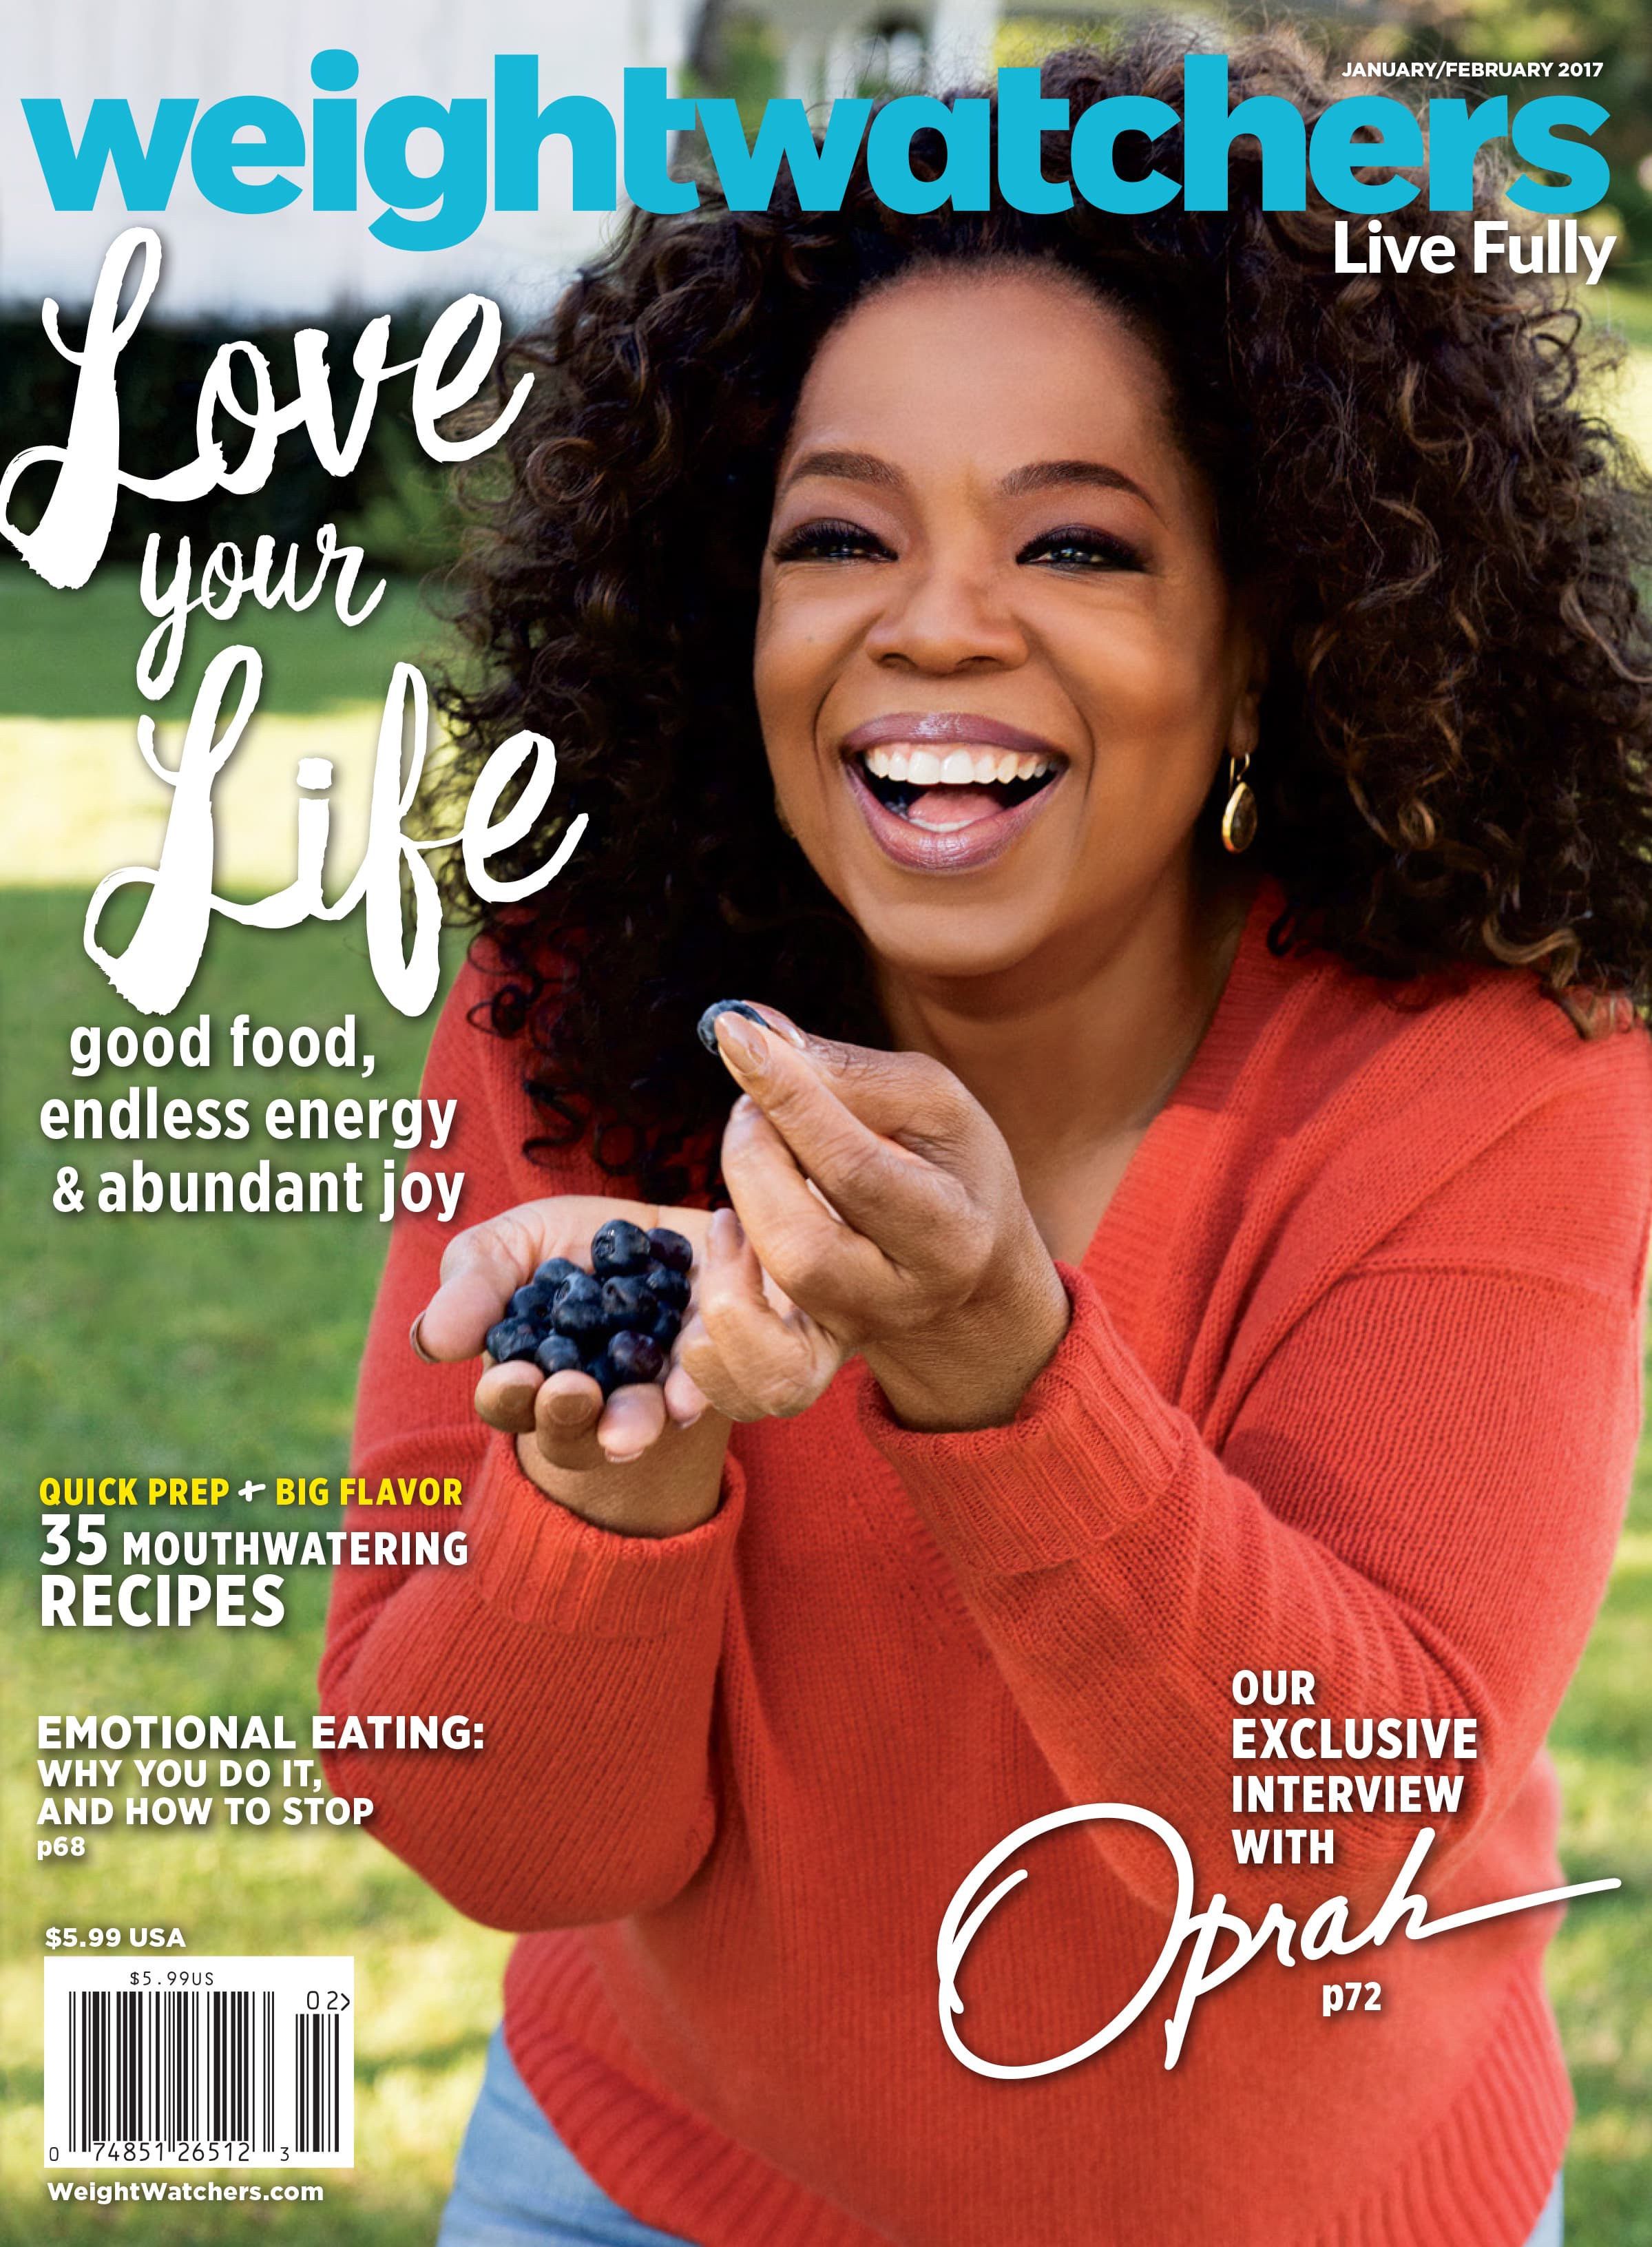 Weight Watchers rebrands as WW: Oprah Winfrey backs wellness focus